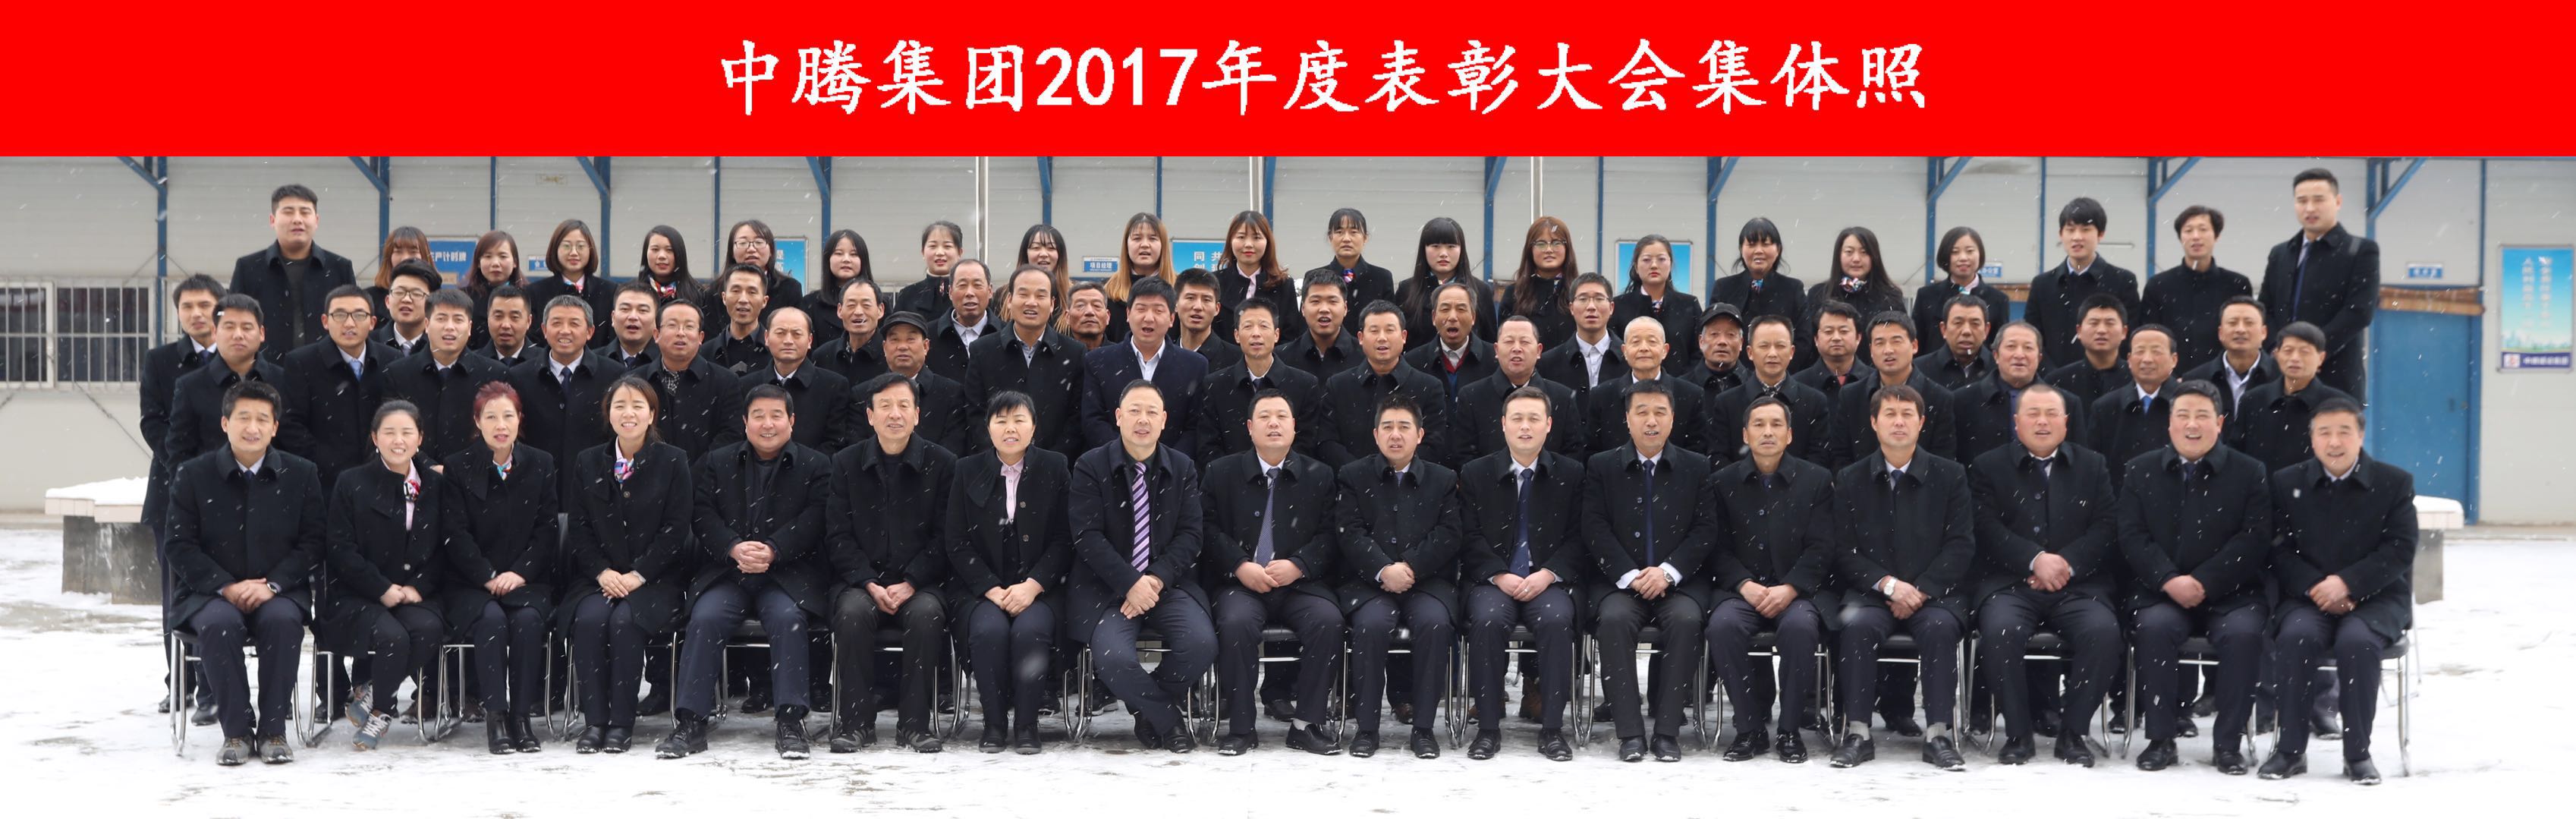 中腾集团2017年表彰大会